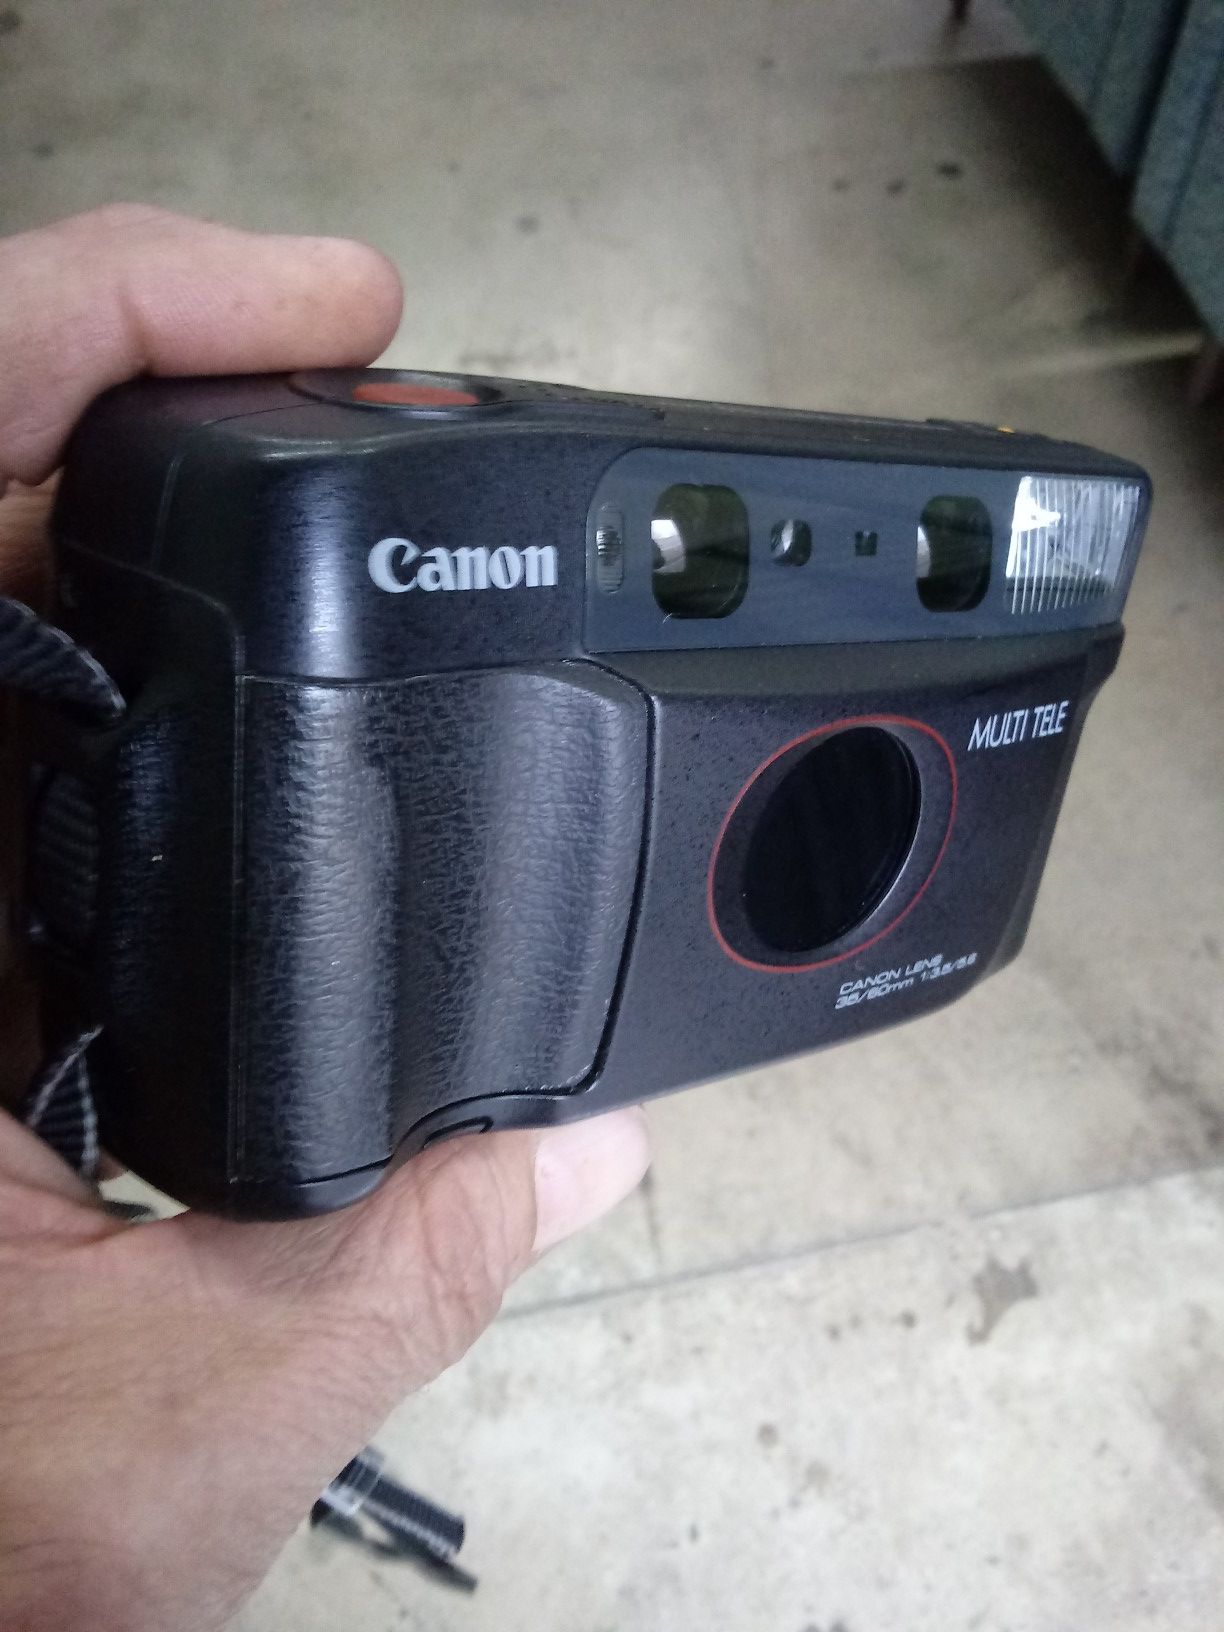 Canon Sure Shot Multi Tele Circa@1988 TESTED